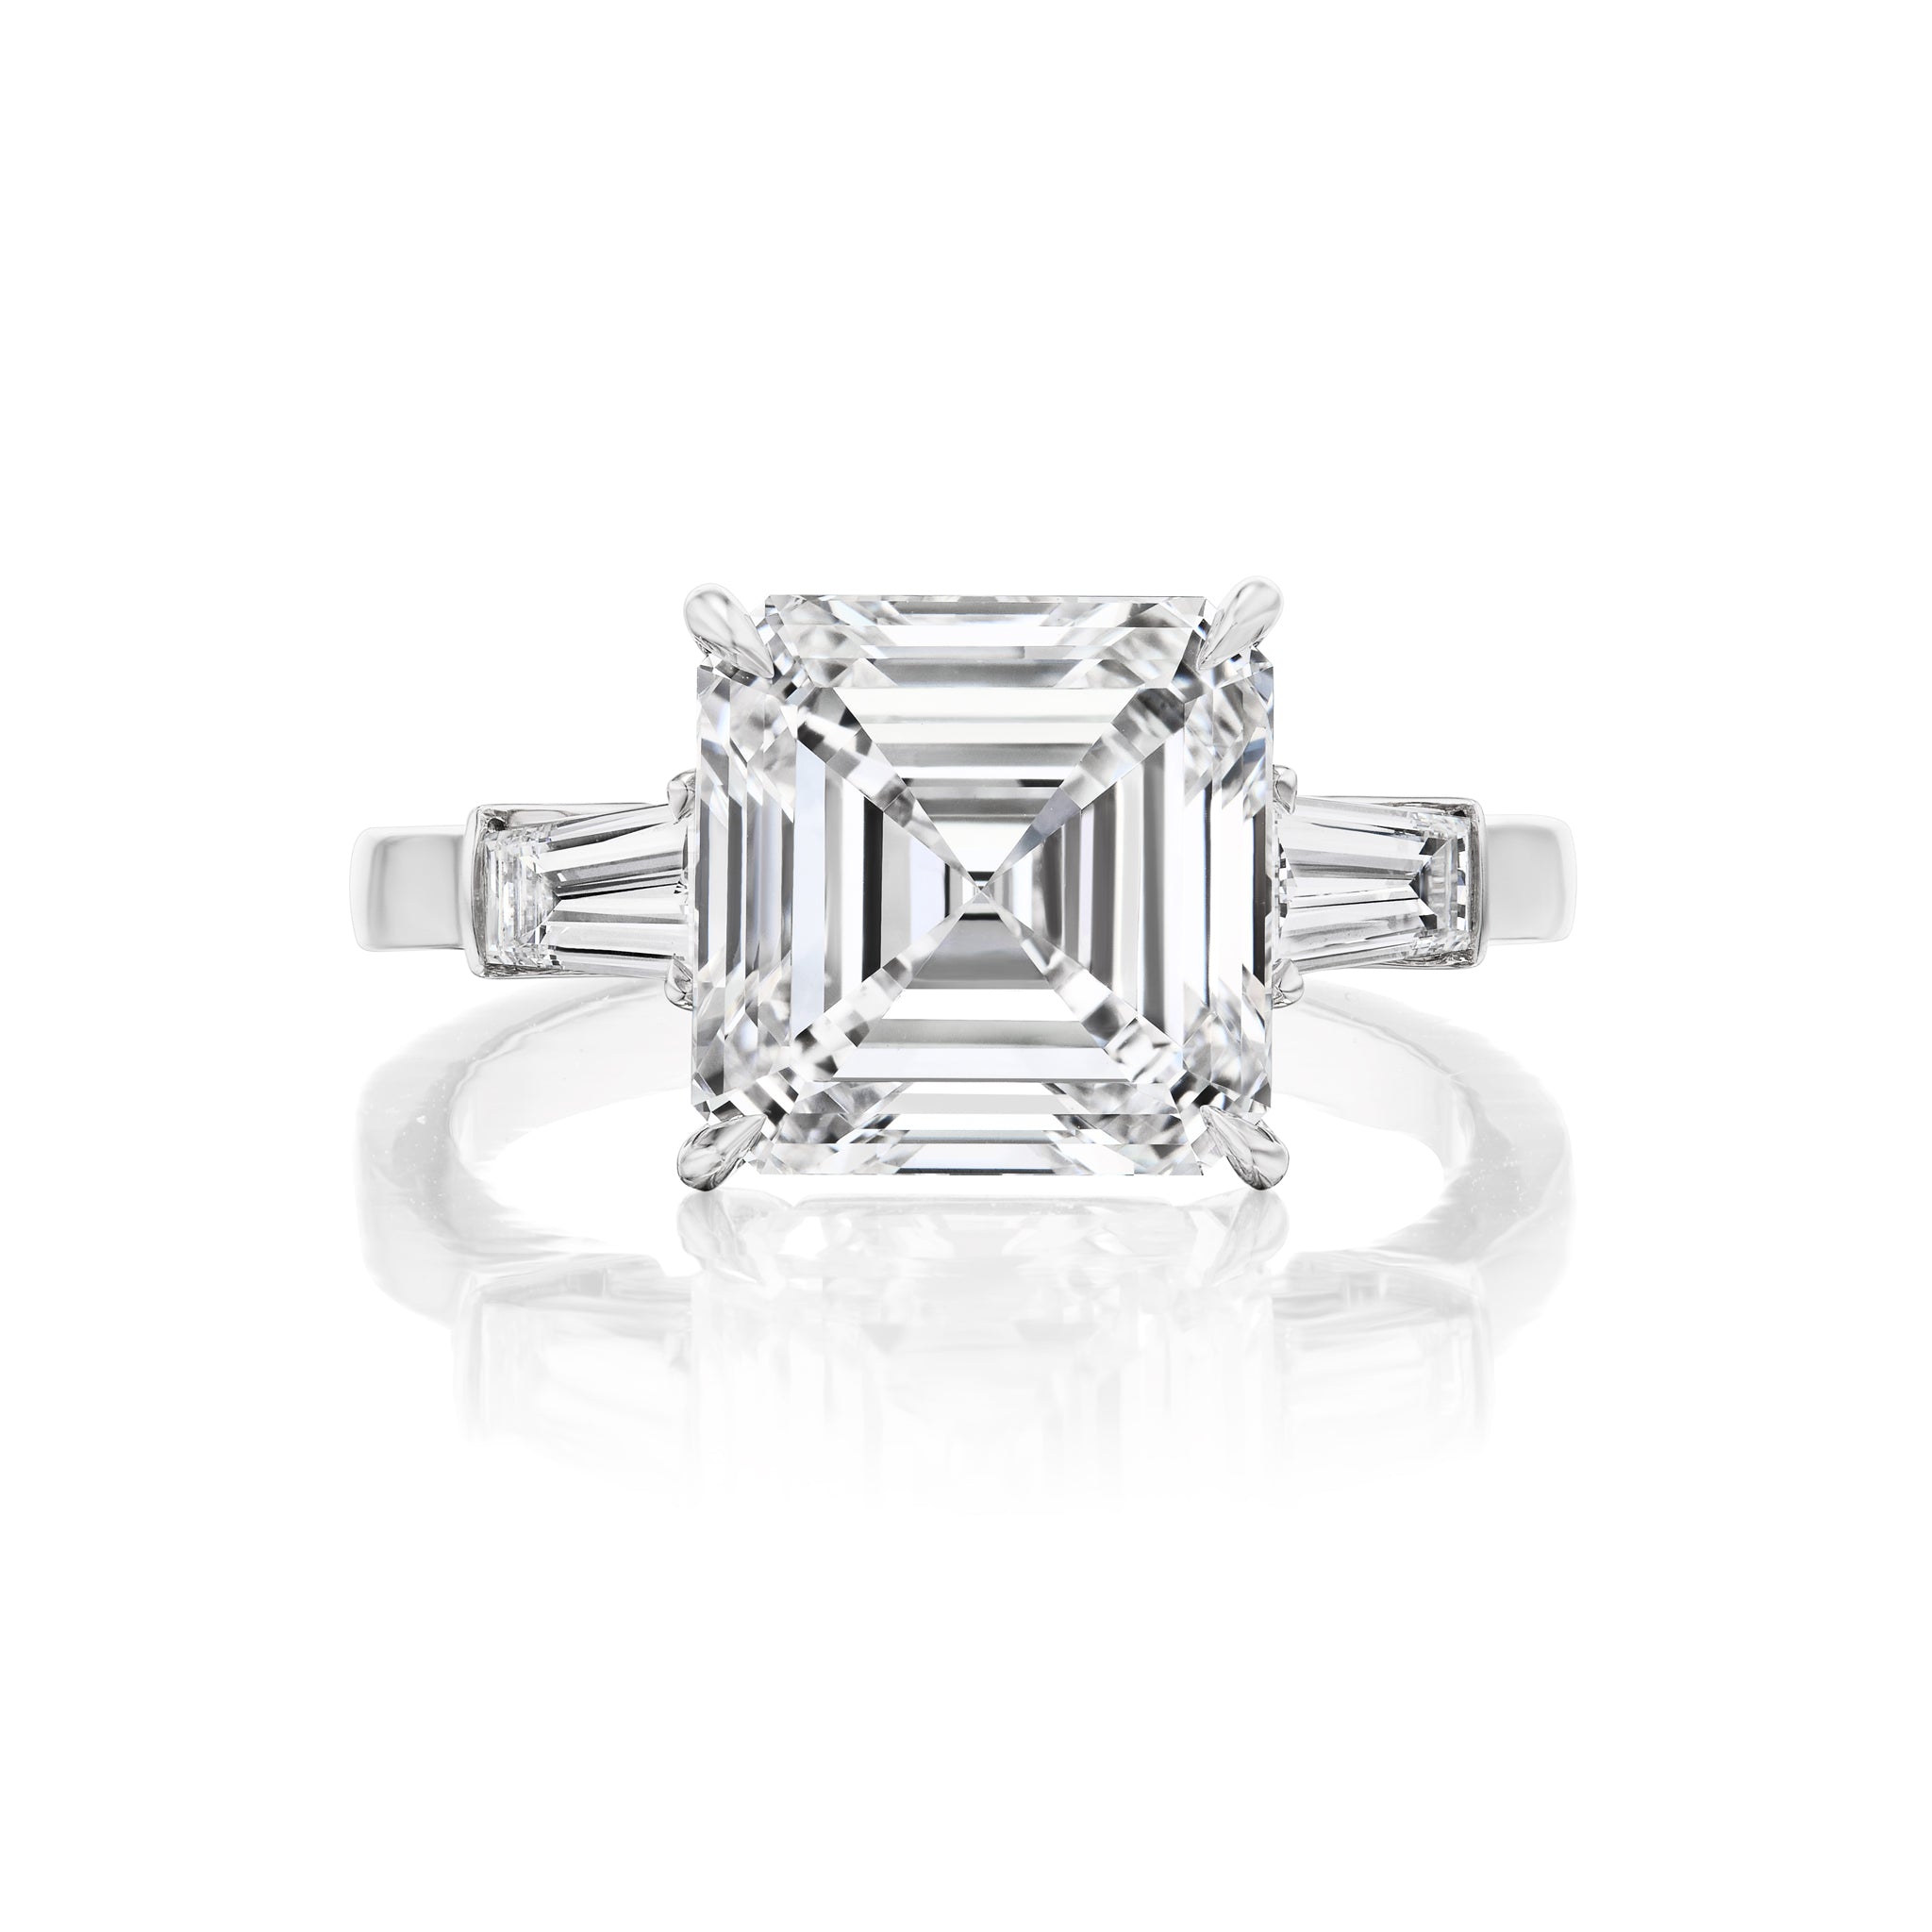 Platinum Asscher Cut Diamond Ring